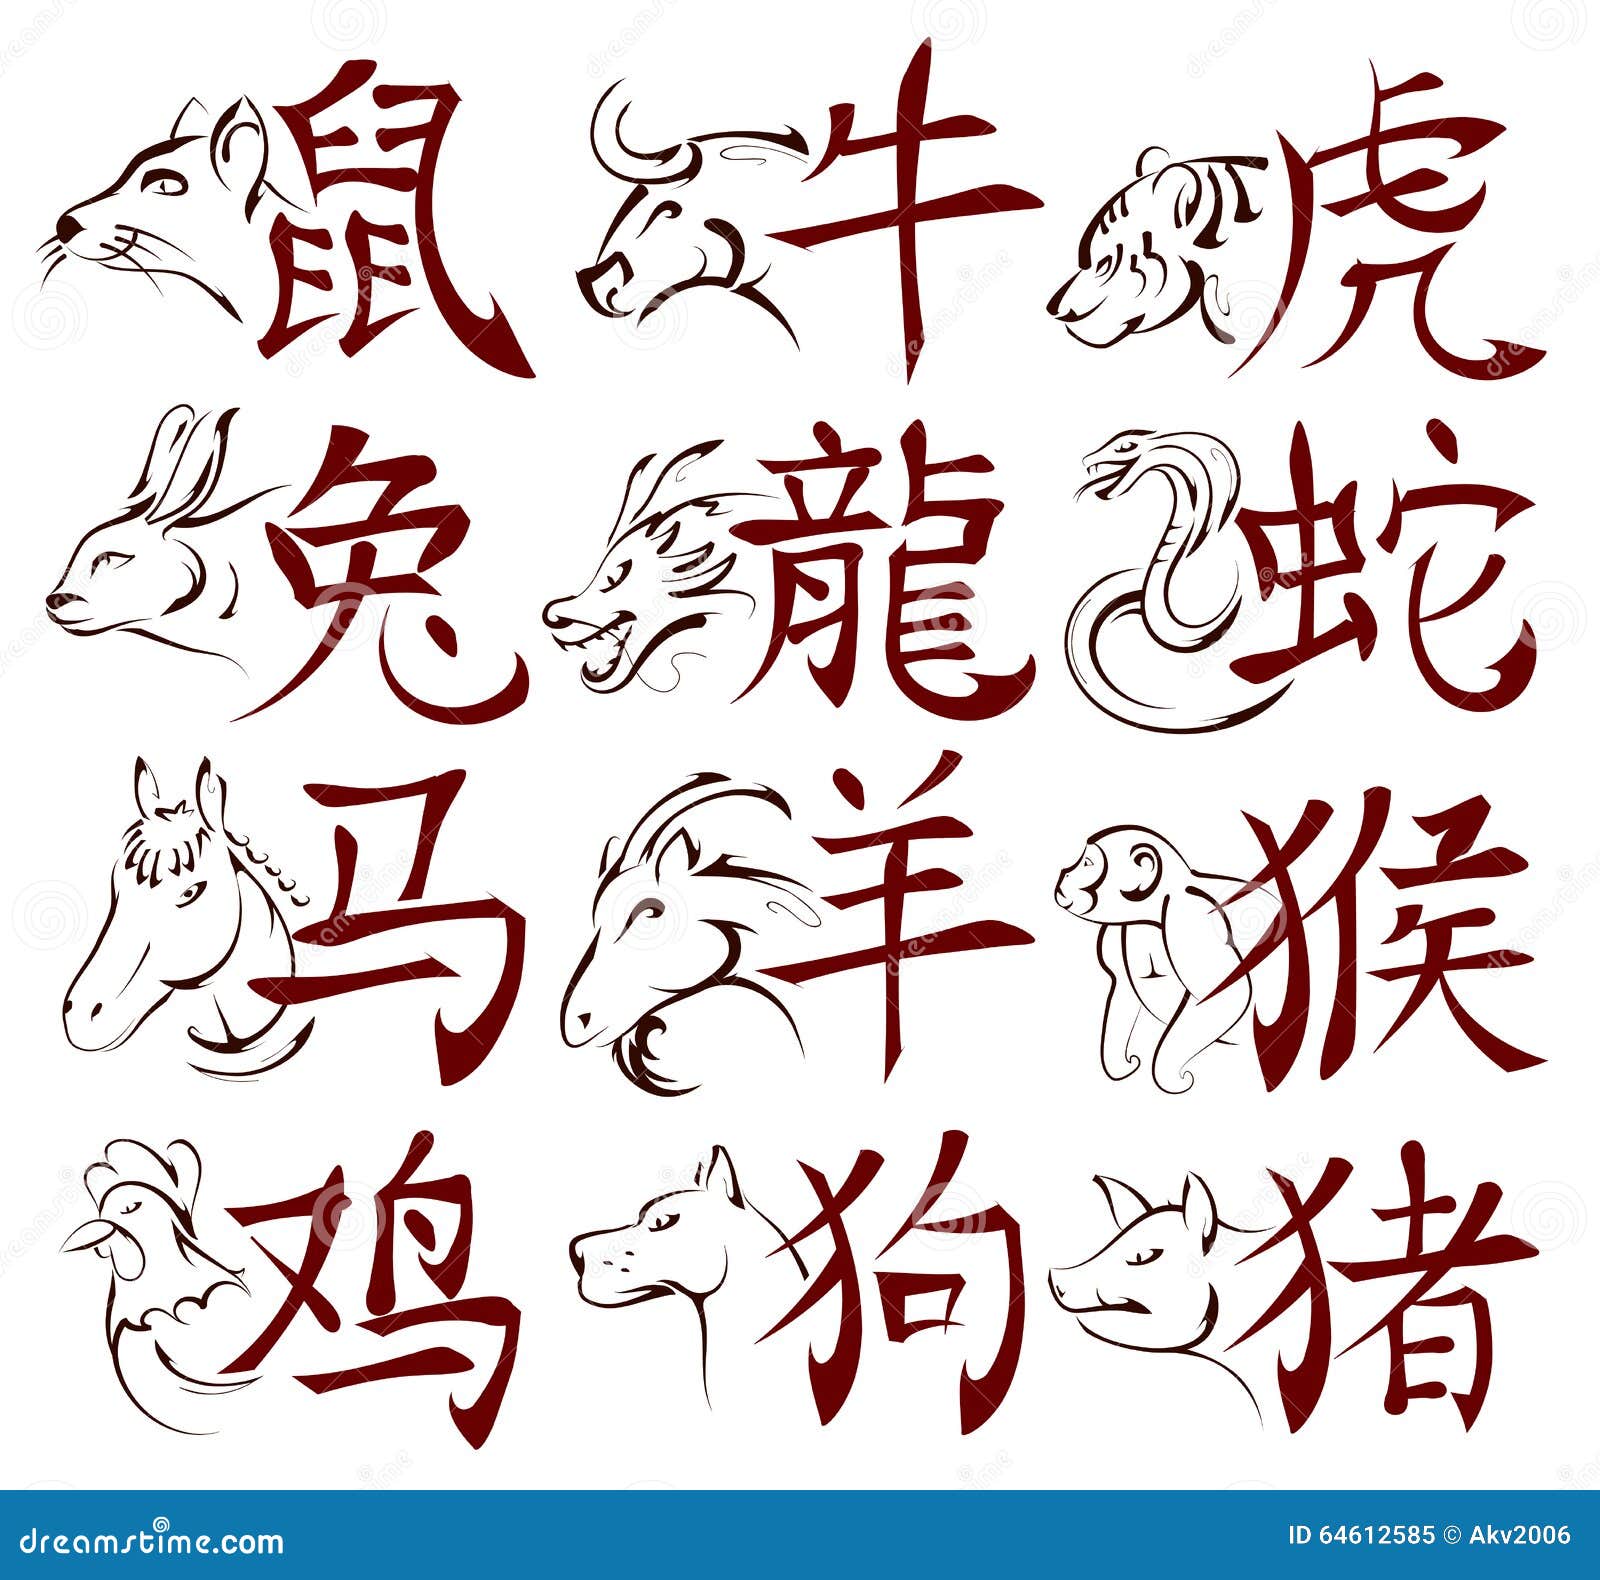 Знаки зодиака на китайском. Китайские знаки. Иероглифы животных. Японские символы животных. Тату китайские иероглифы знаки зодиака.